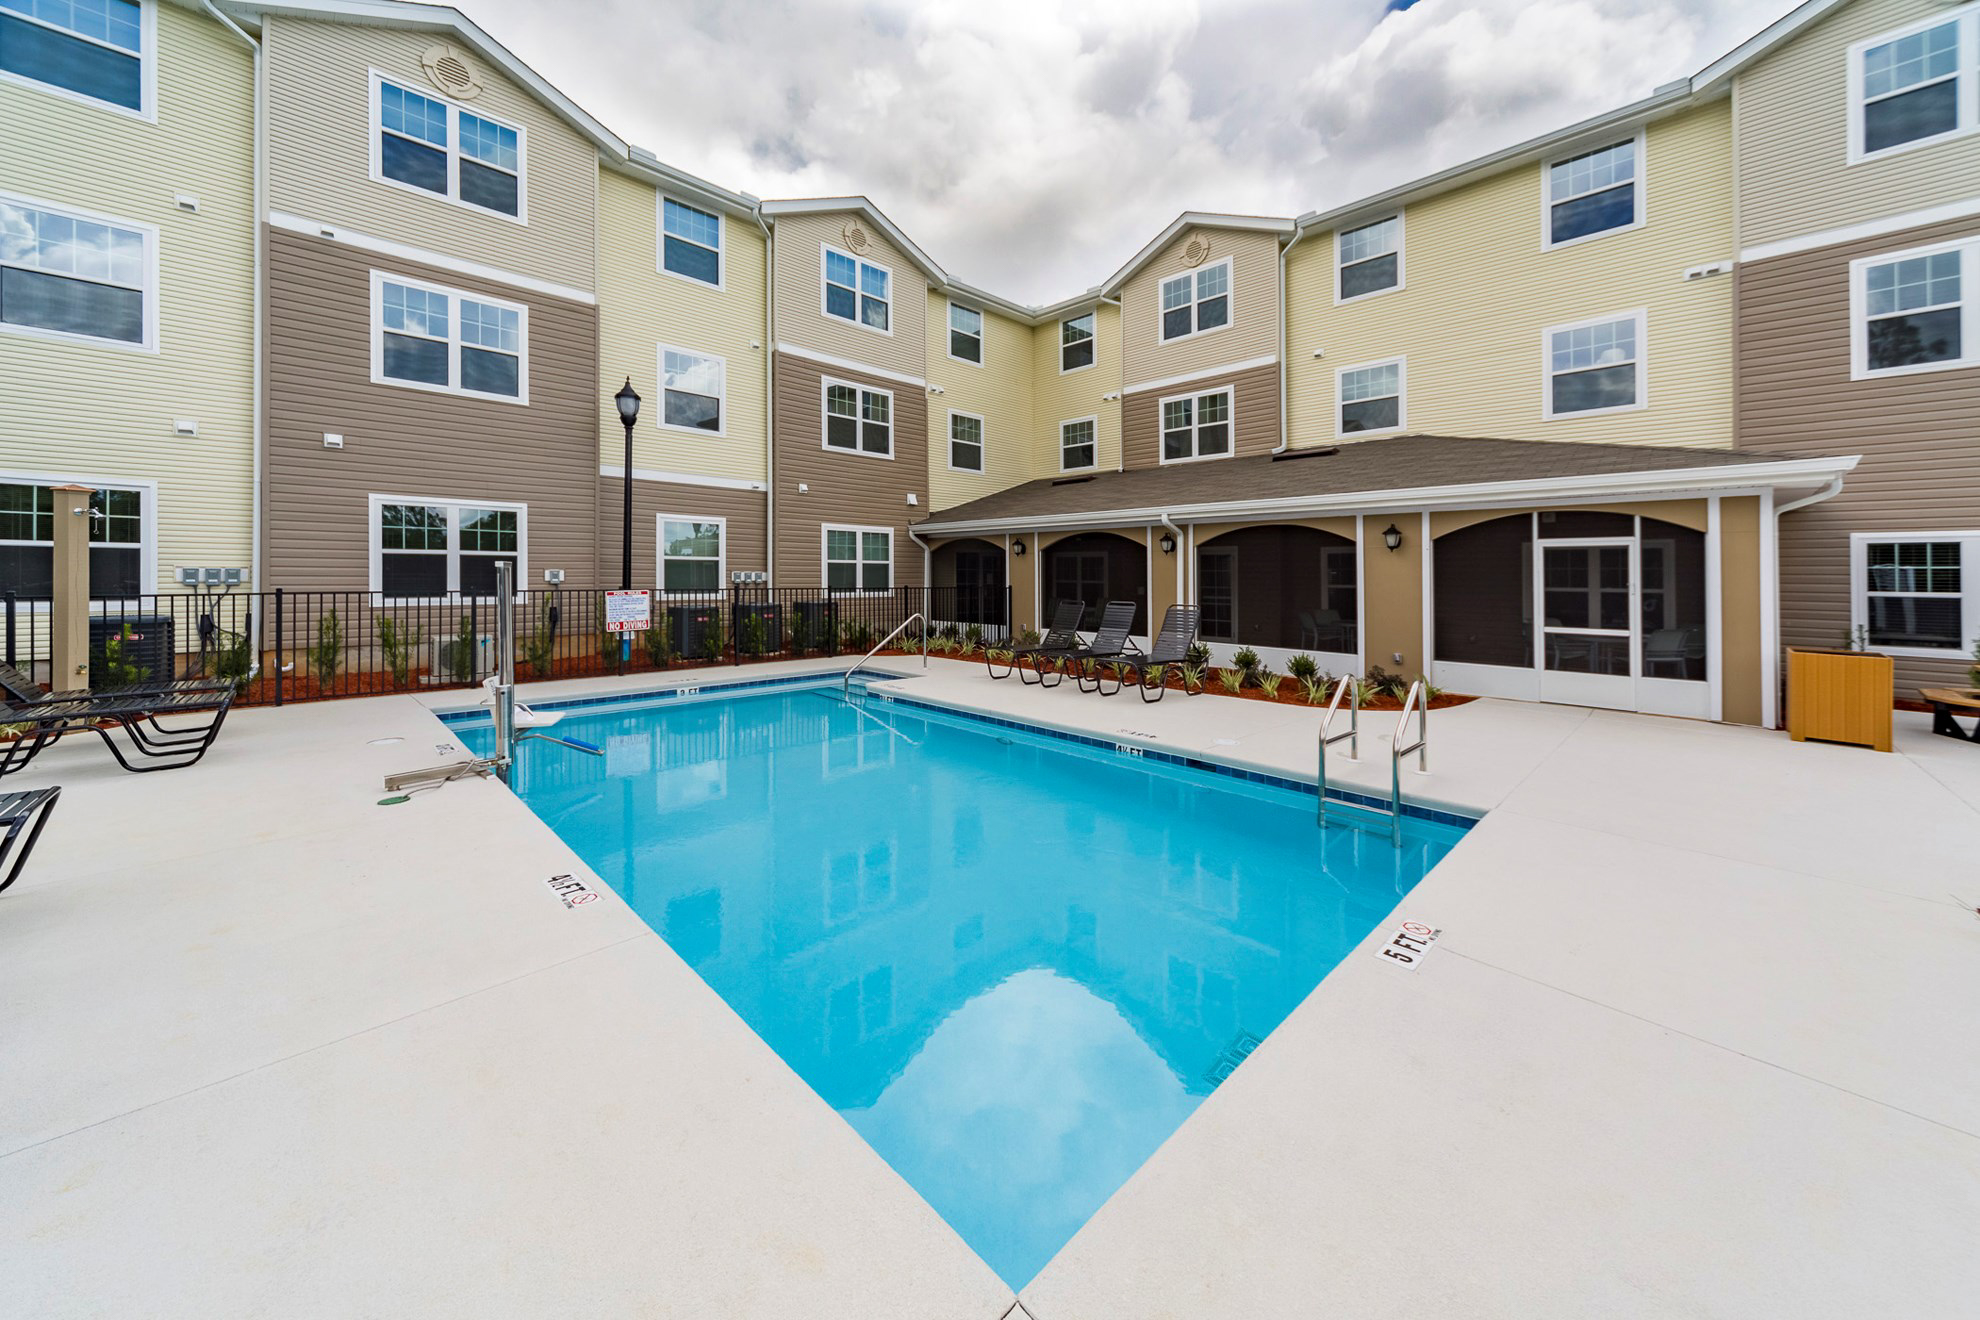 Senior living facility pool area